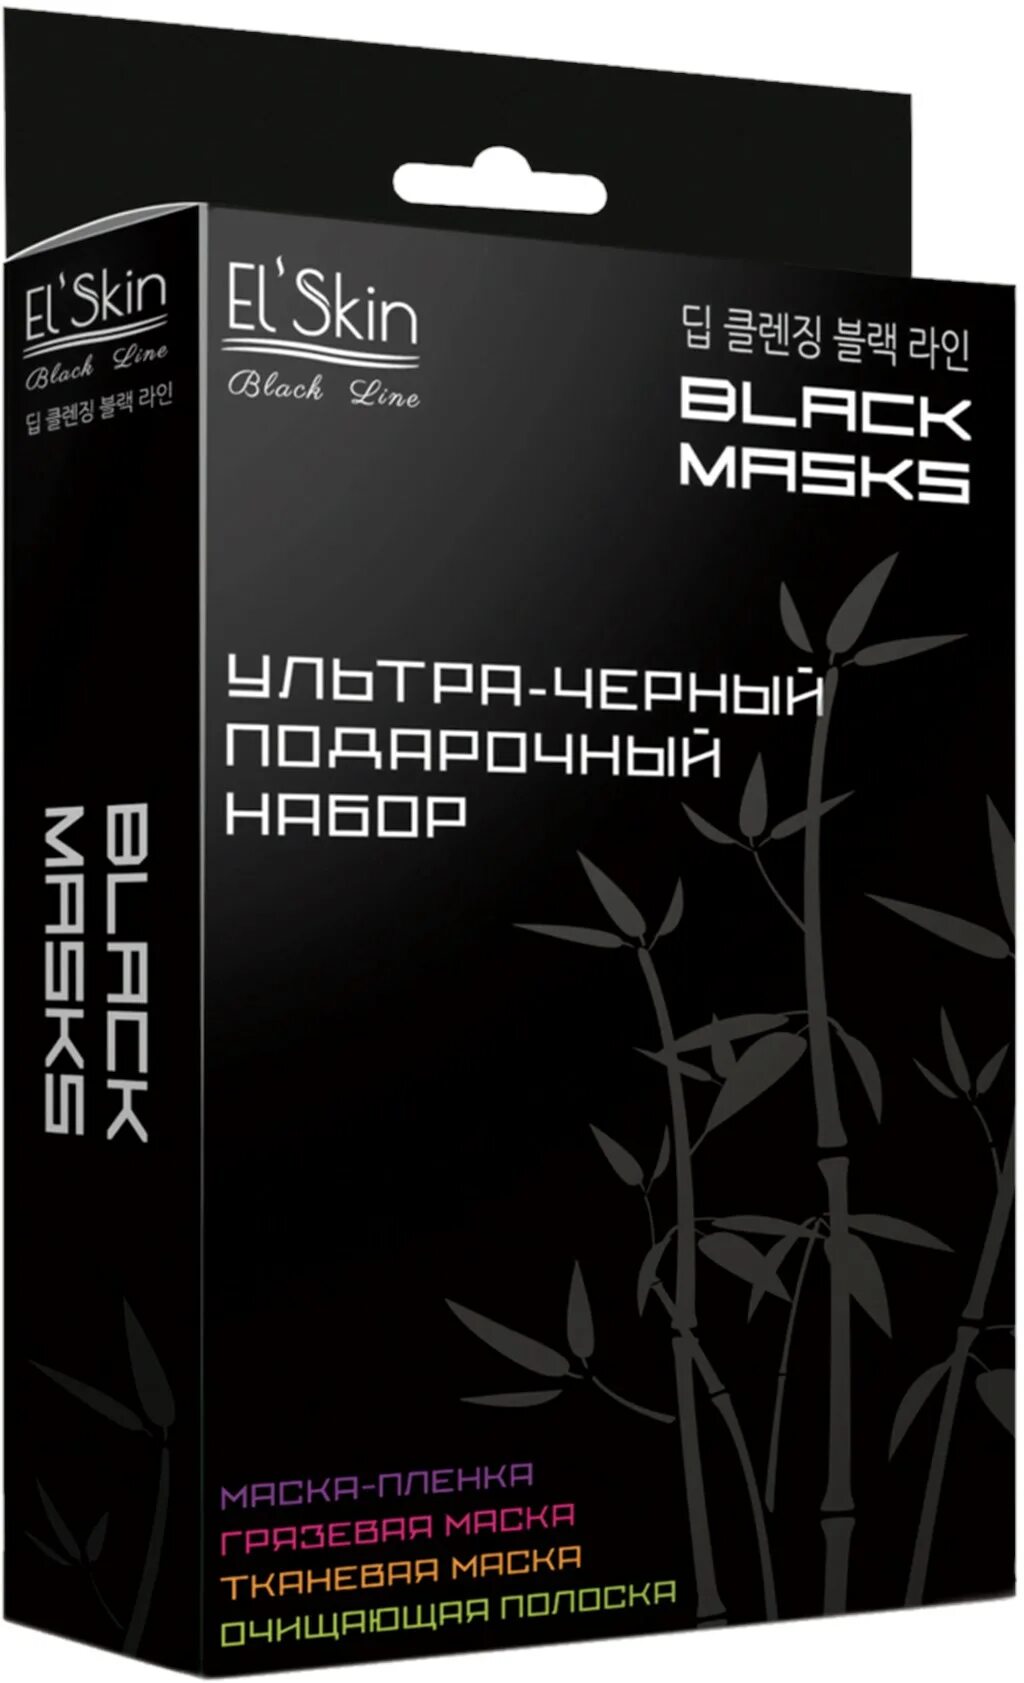 El skin маска. Подарочный набор es-3903 el'Skin "ультра-черный" (3 маски+1полоска). Подарочный набор масок el Skin. El Skin тканевая маска. Скинлайт черная грязевая маска 10г.